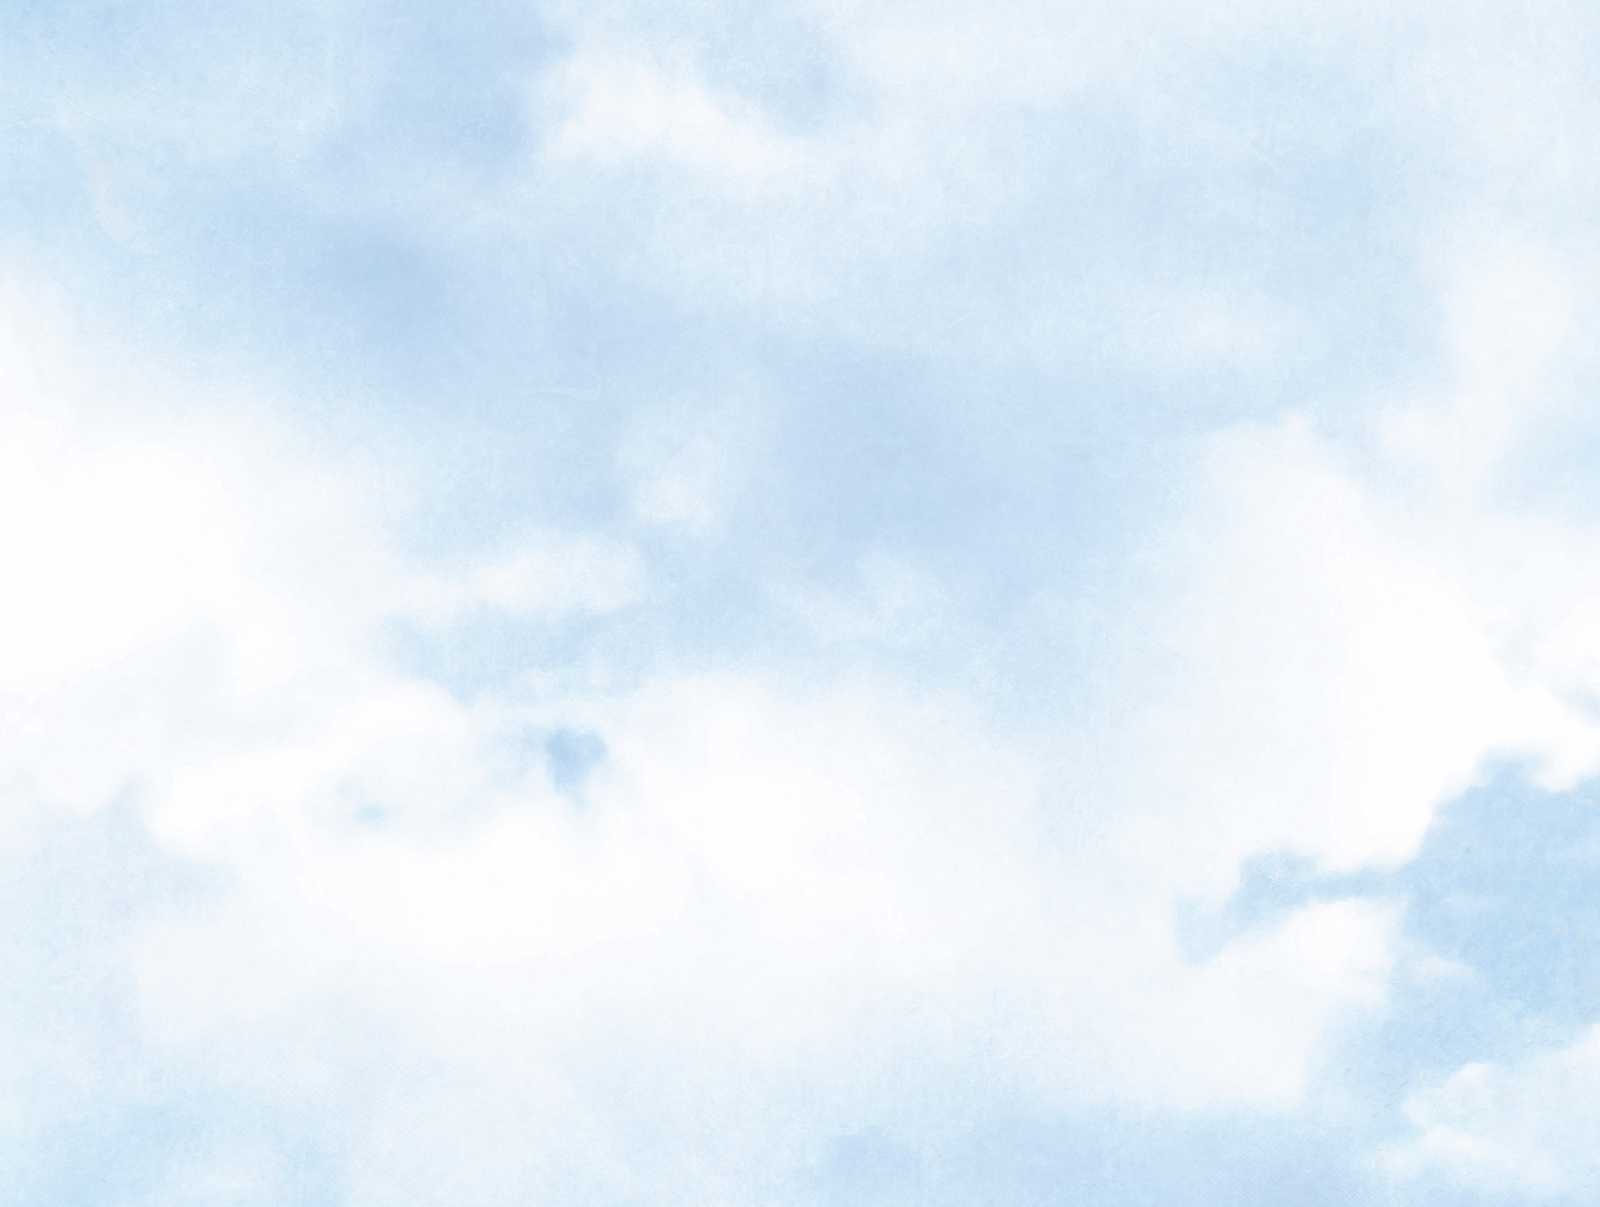             behang nieuwigheid | motief behang blauwe lucht met wolken
        